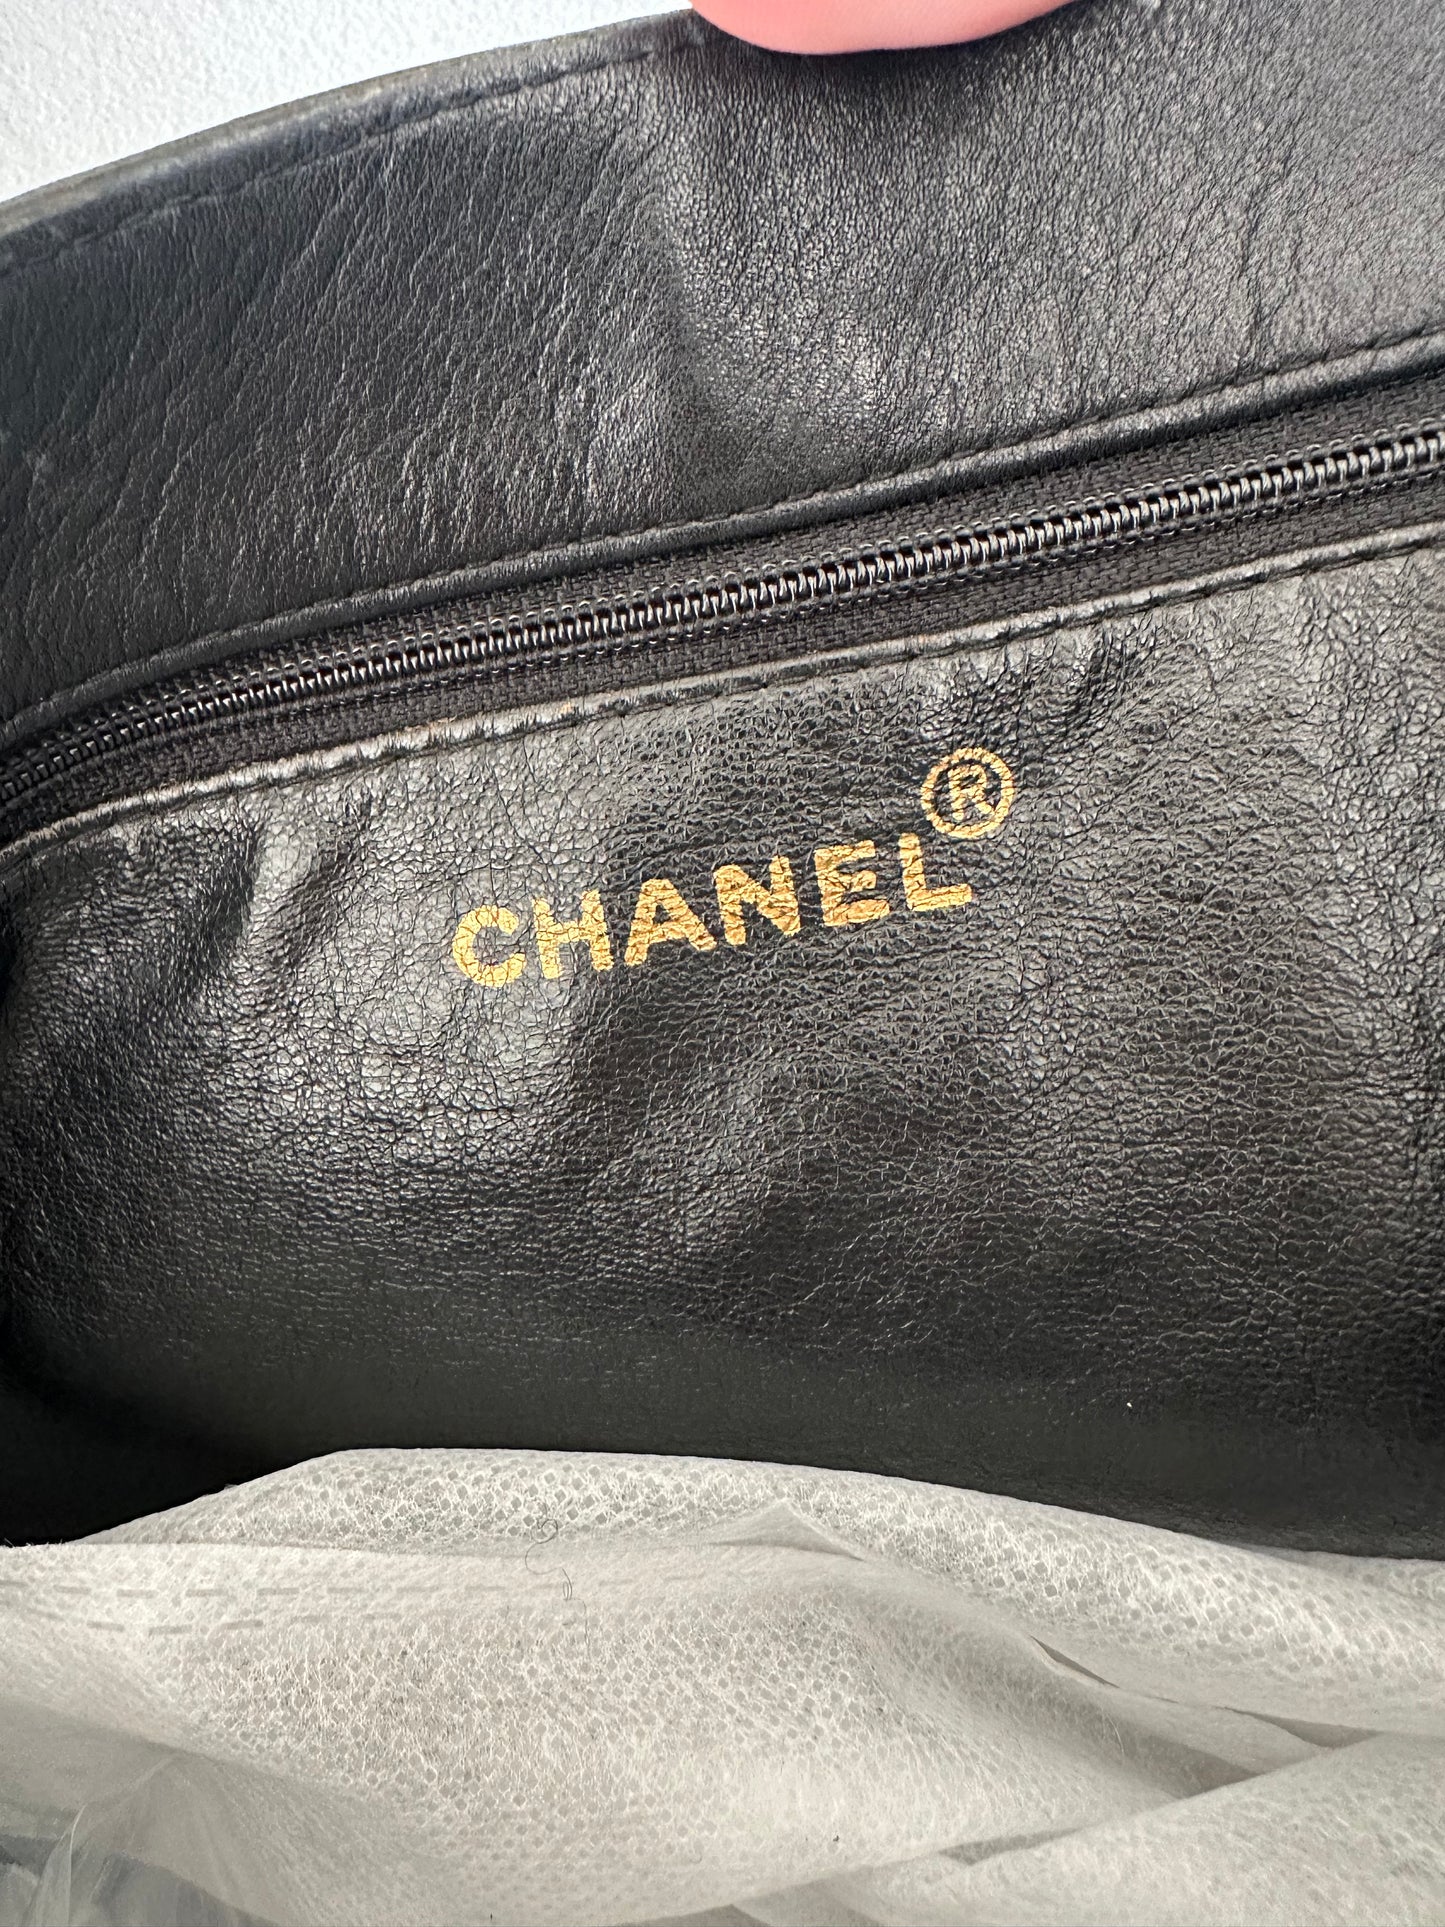 Chanel XL vintage tote